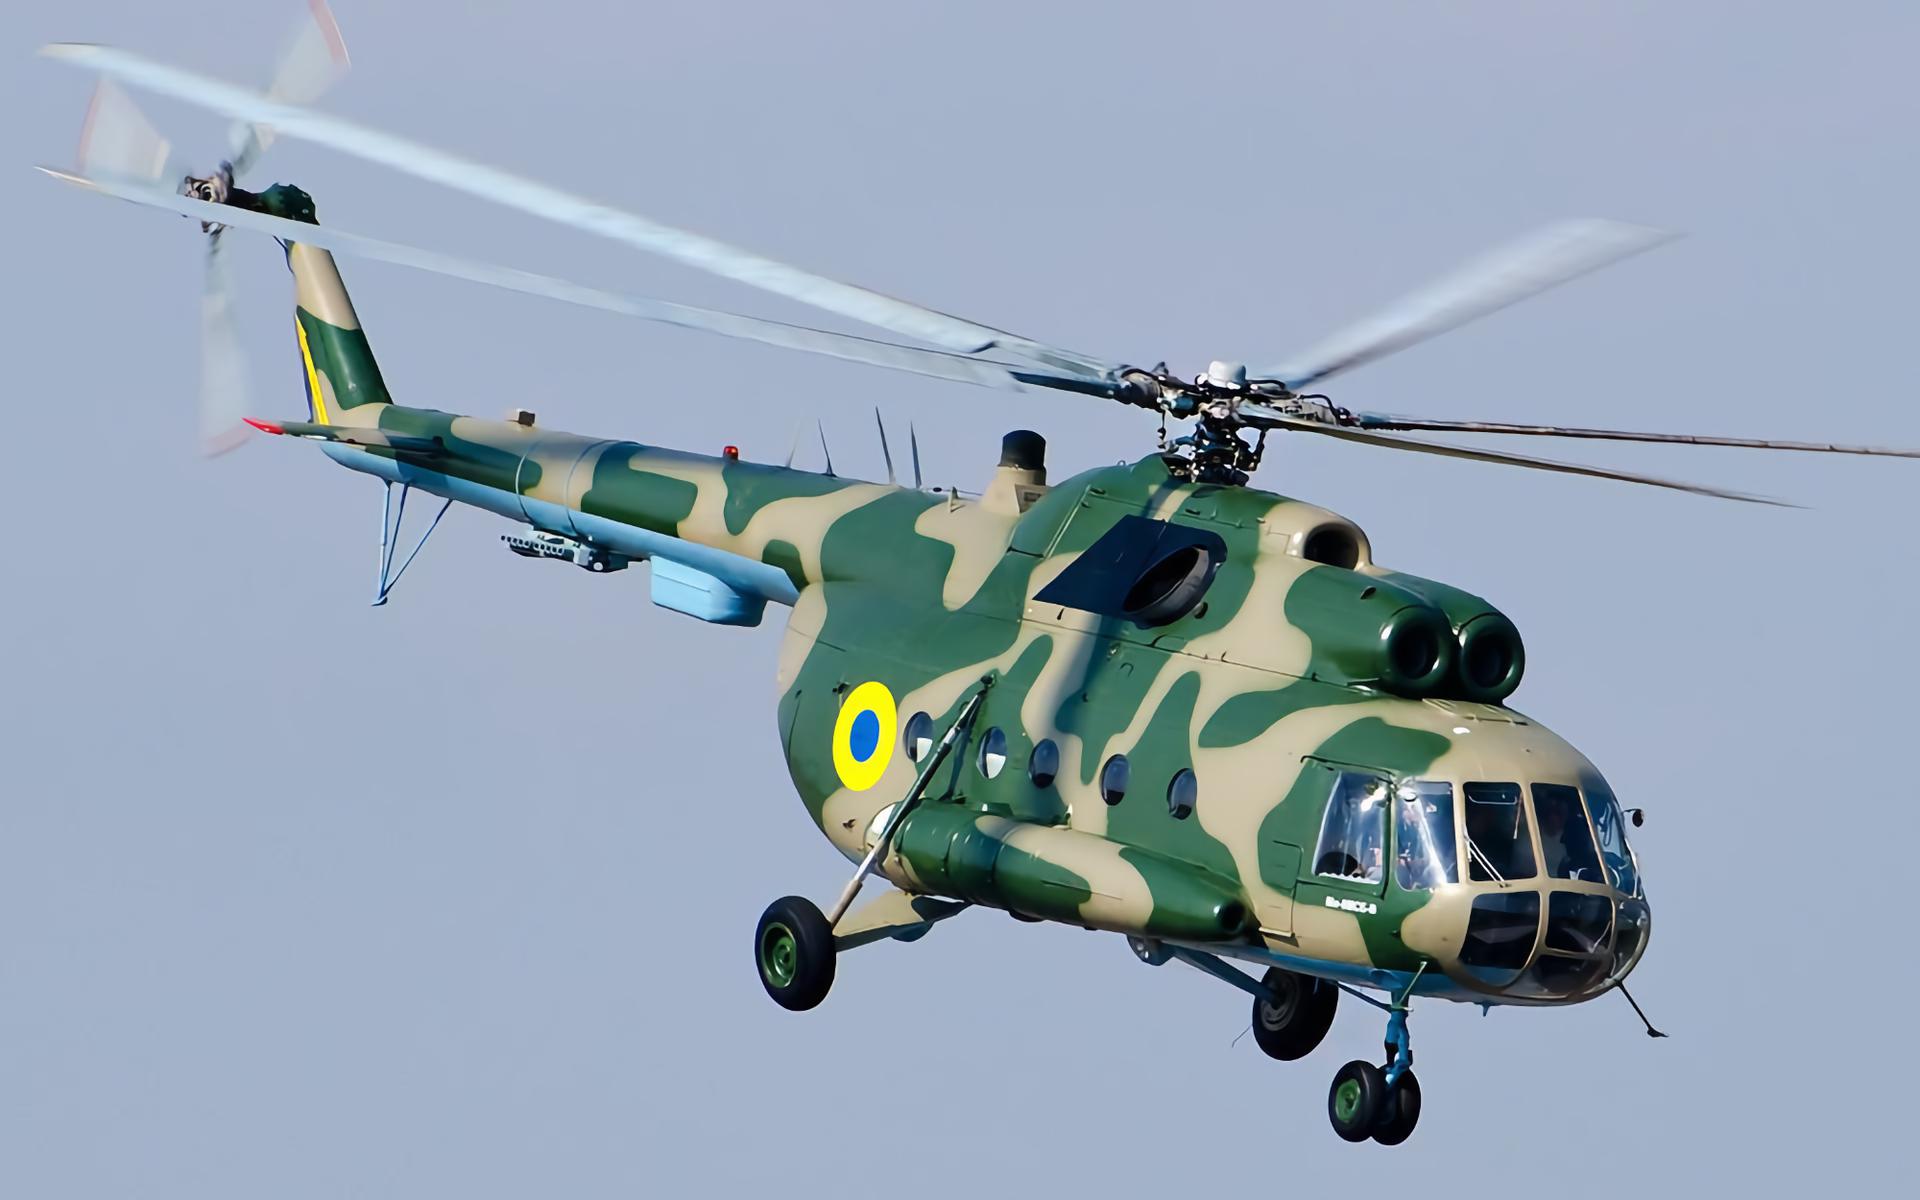 Elicotteri Mi-8 ucraini attaccano le posizioni nemiche sulla colonna sonora di Danger Zone dal film Top Gun (video)